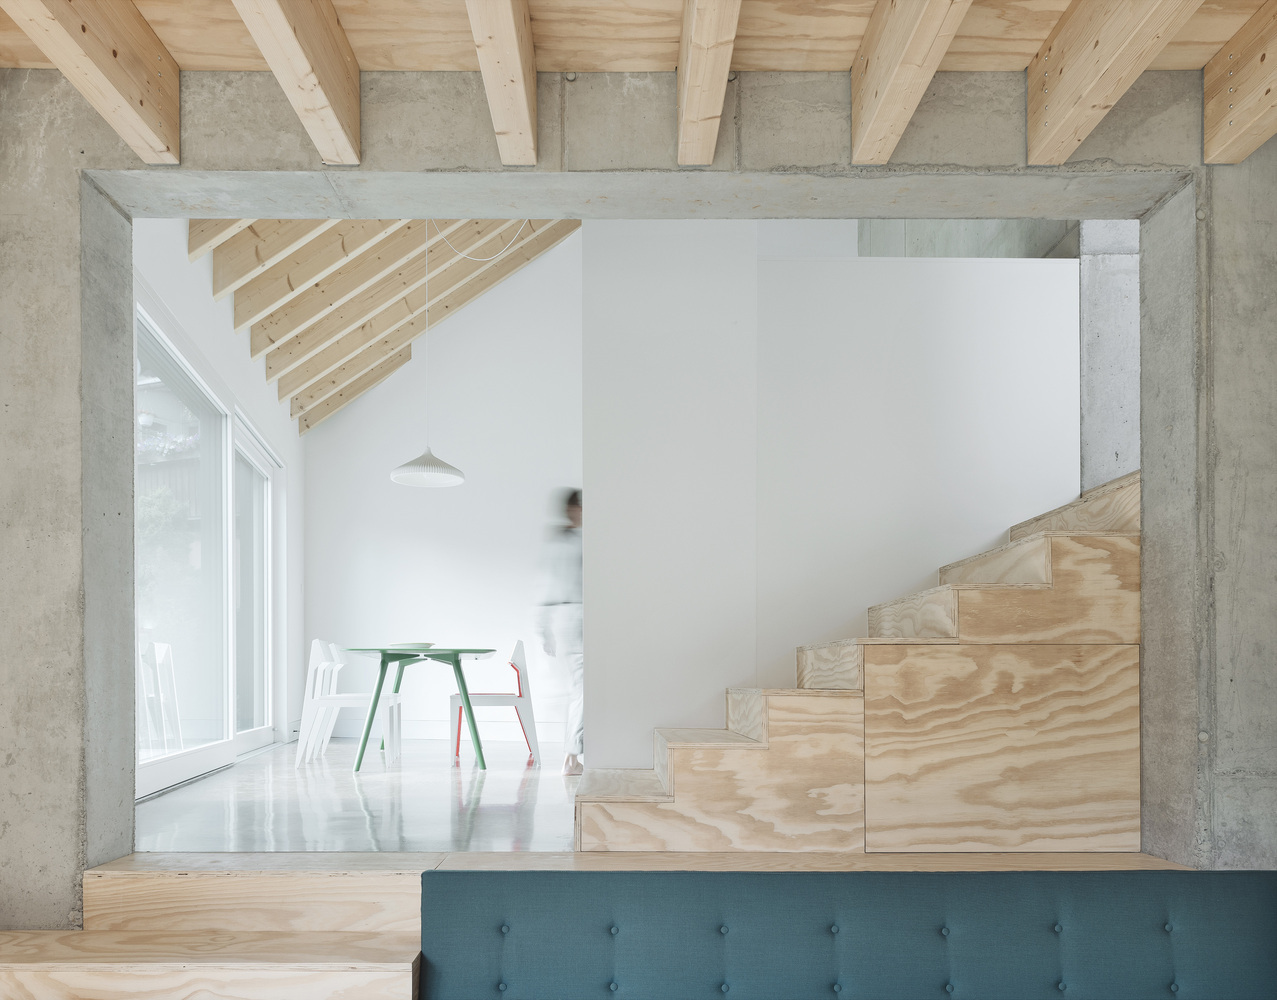 Xu hướng thiết kế nội thất tương lai chuộng sử dụng bê tông và gỗ ở trạng thái nguyên bản.